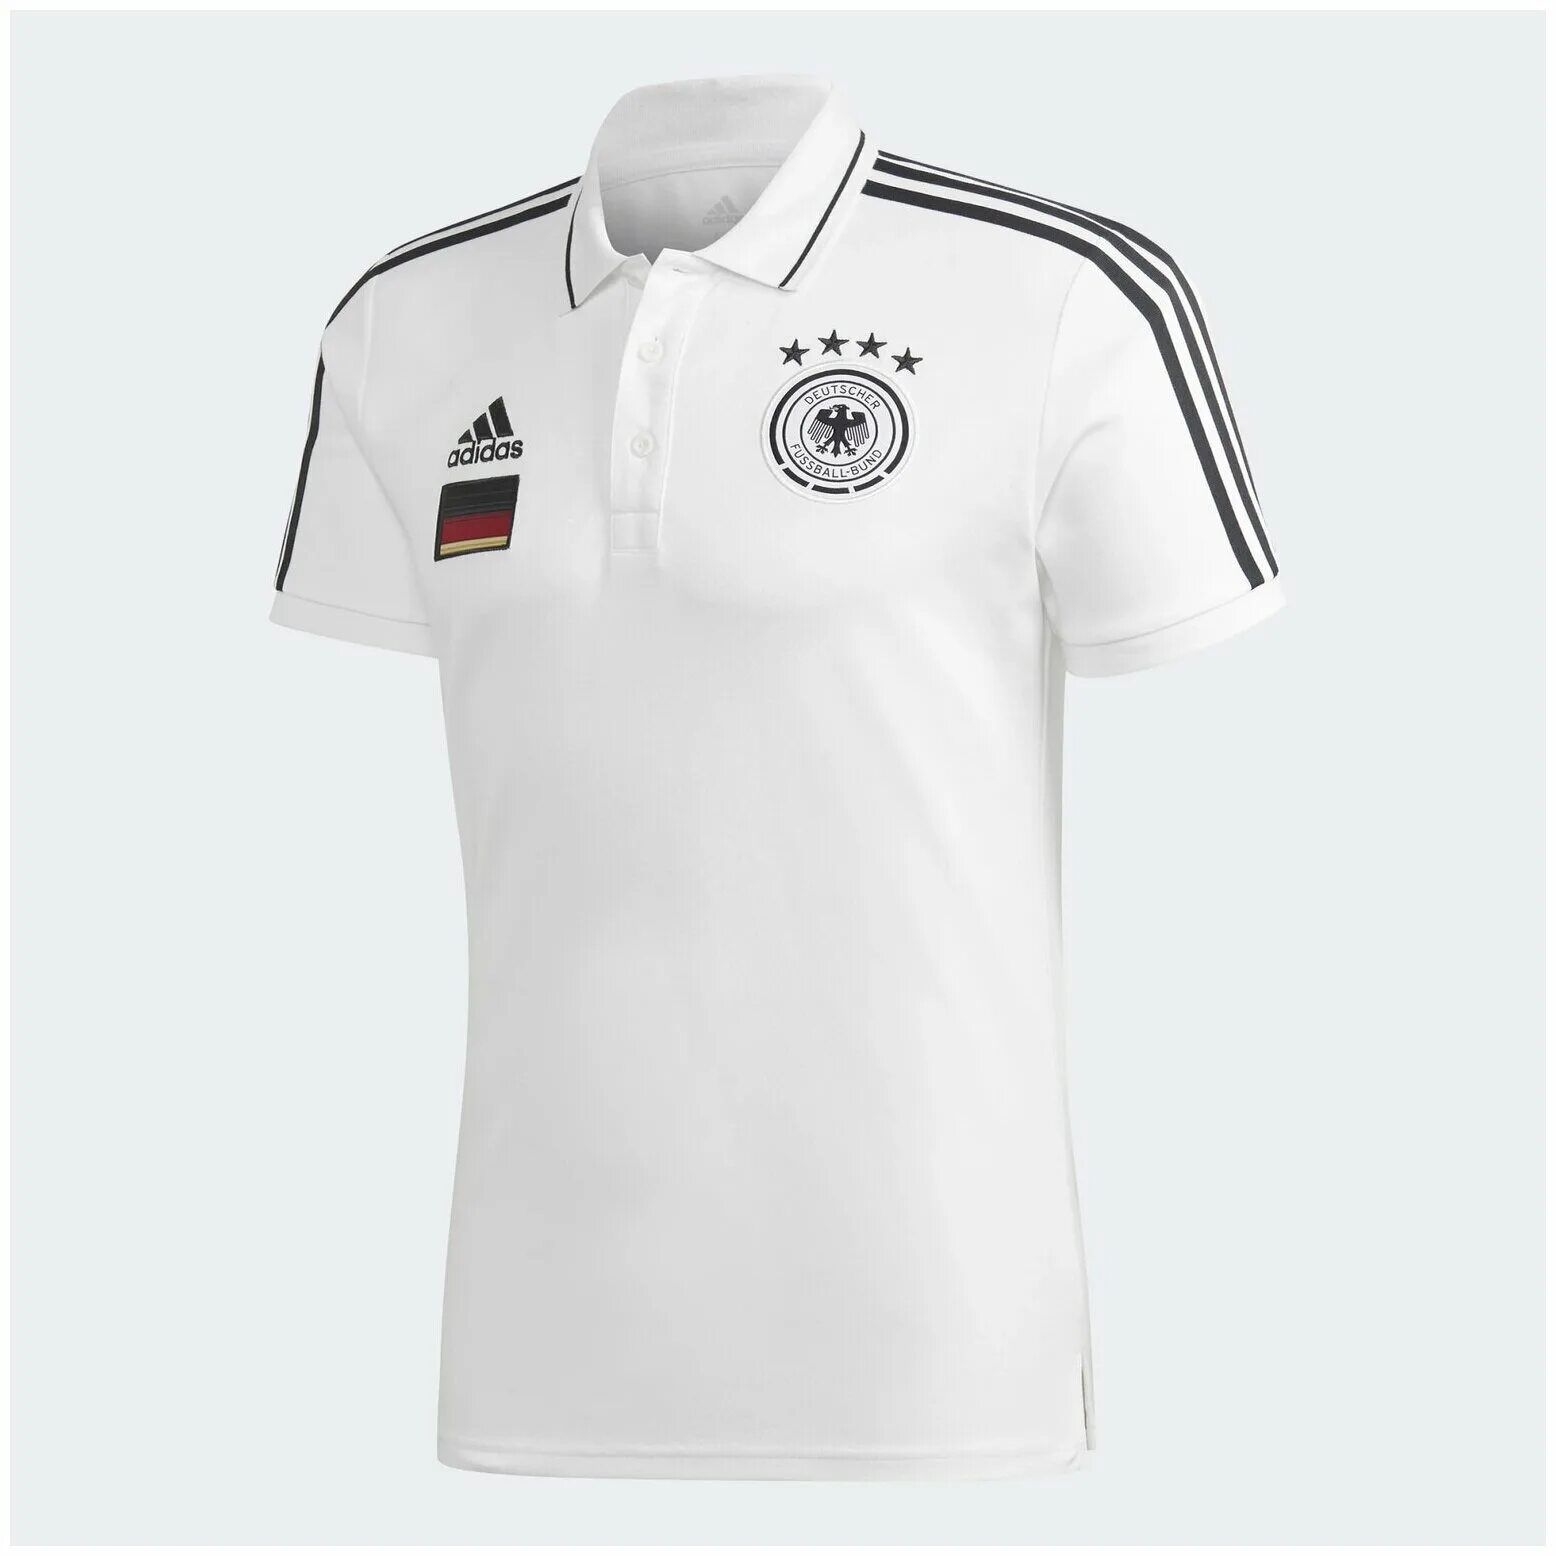 Адидас сборная германии. Adidas Germany Polo. Поло adidas DFB. Адидас 2020 поло мужское белое. Deutscher Fussball Bund футболка адидас.